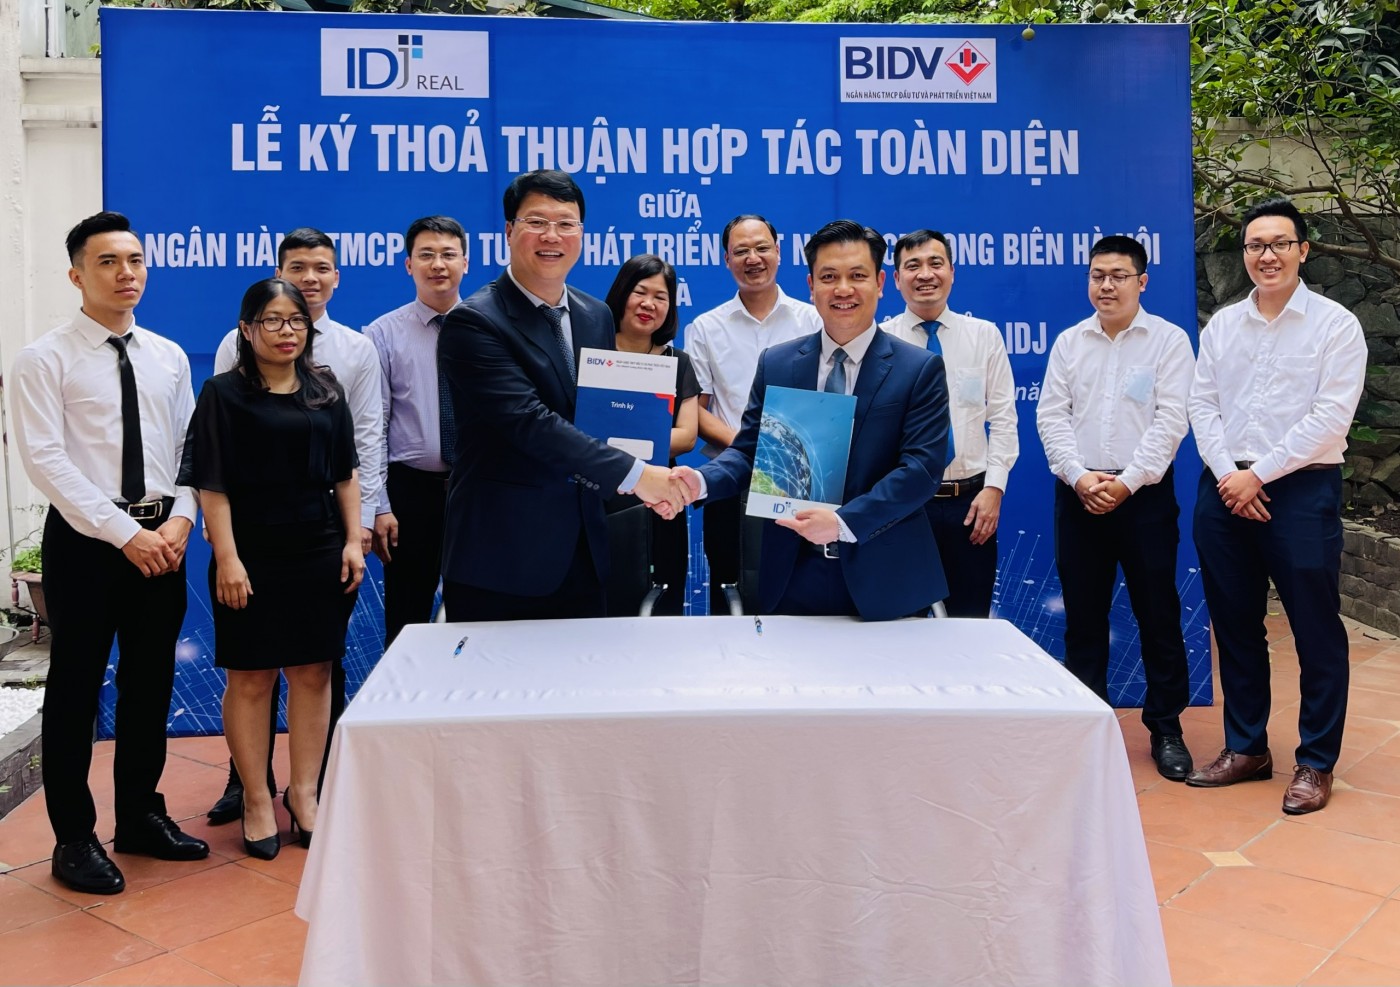 IDJ Real ký kết với BIDV